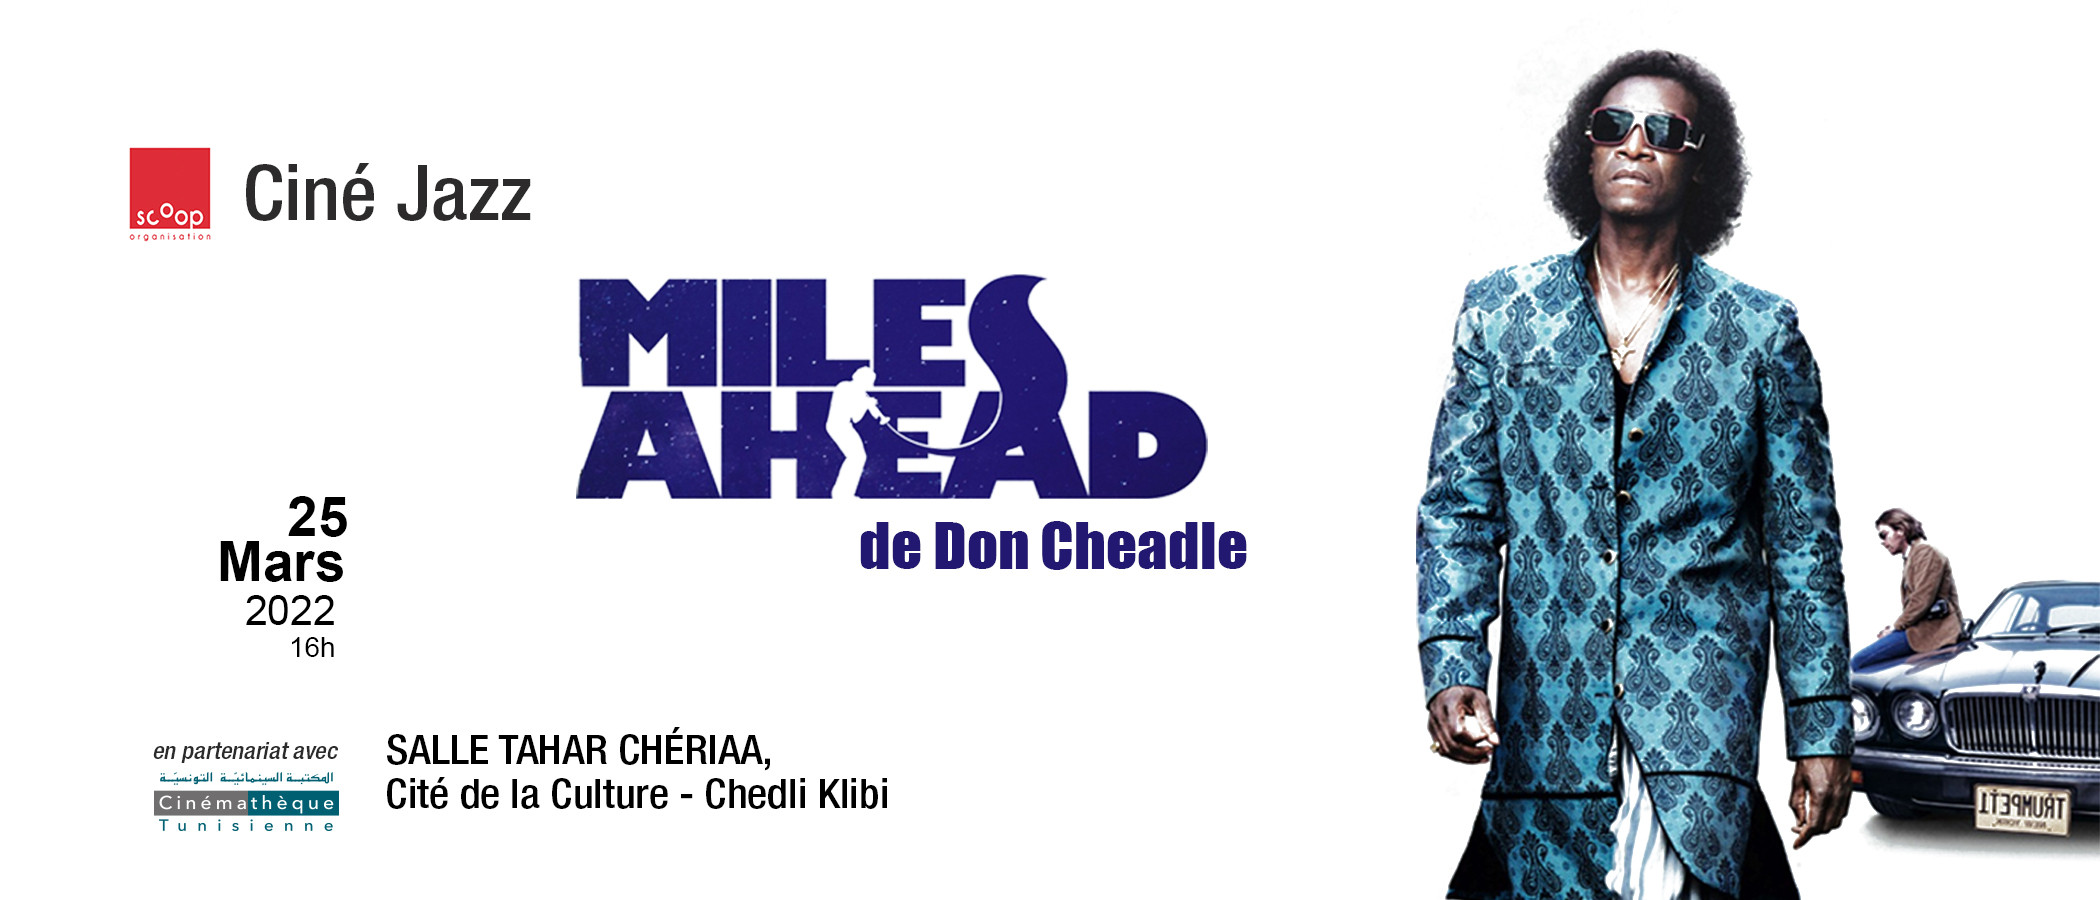 Ciné Jazz
"Miles Ahead"
